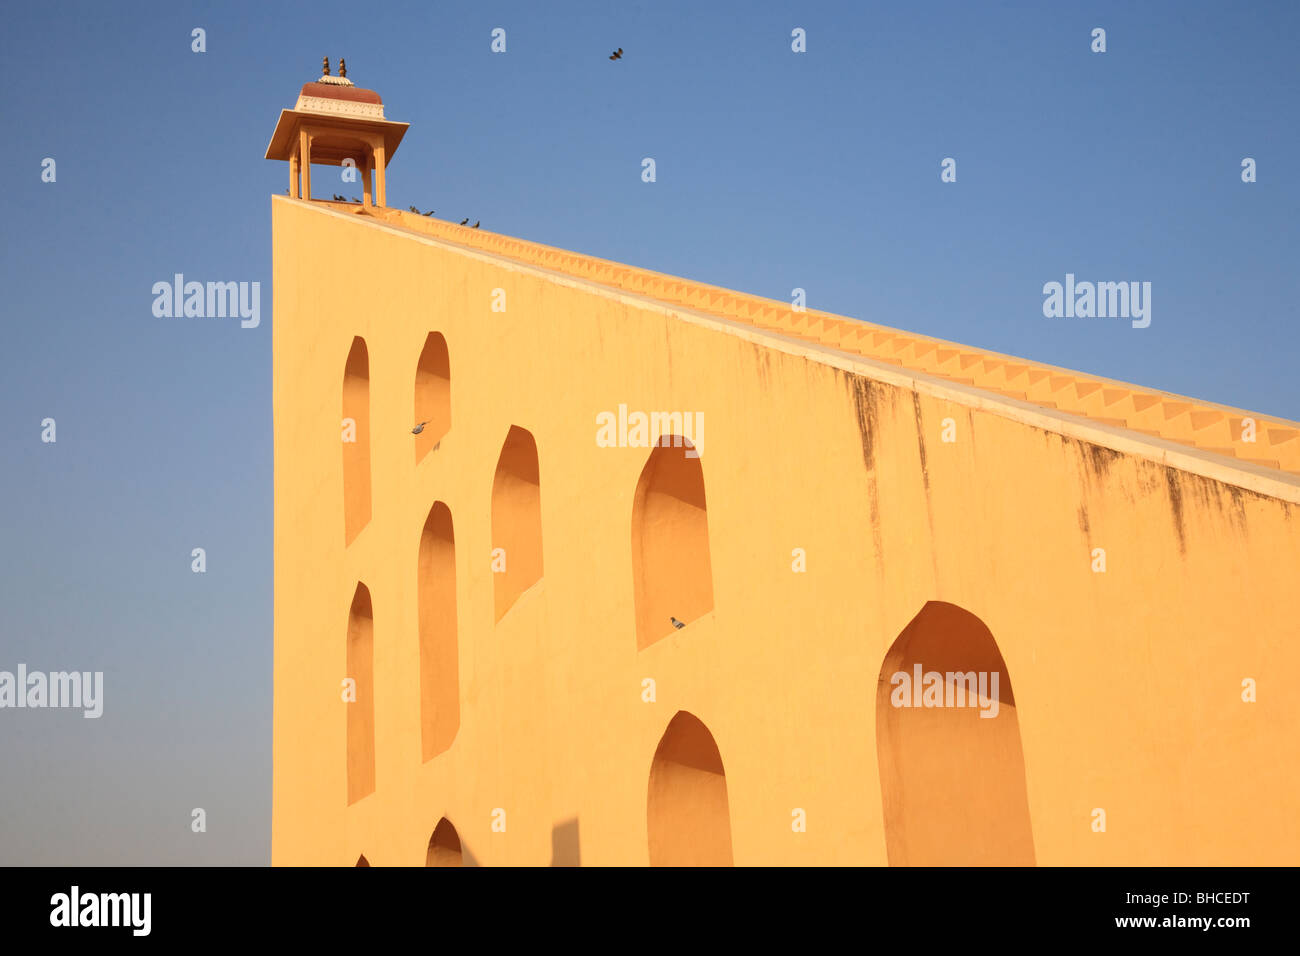 Un instrument de mesure de l'heure du jour à Jantar Mantar, Jaipur, Inde Banque D'Images